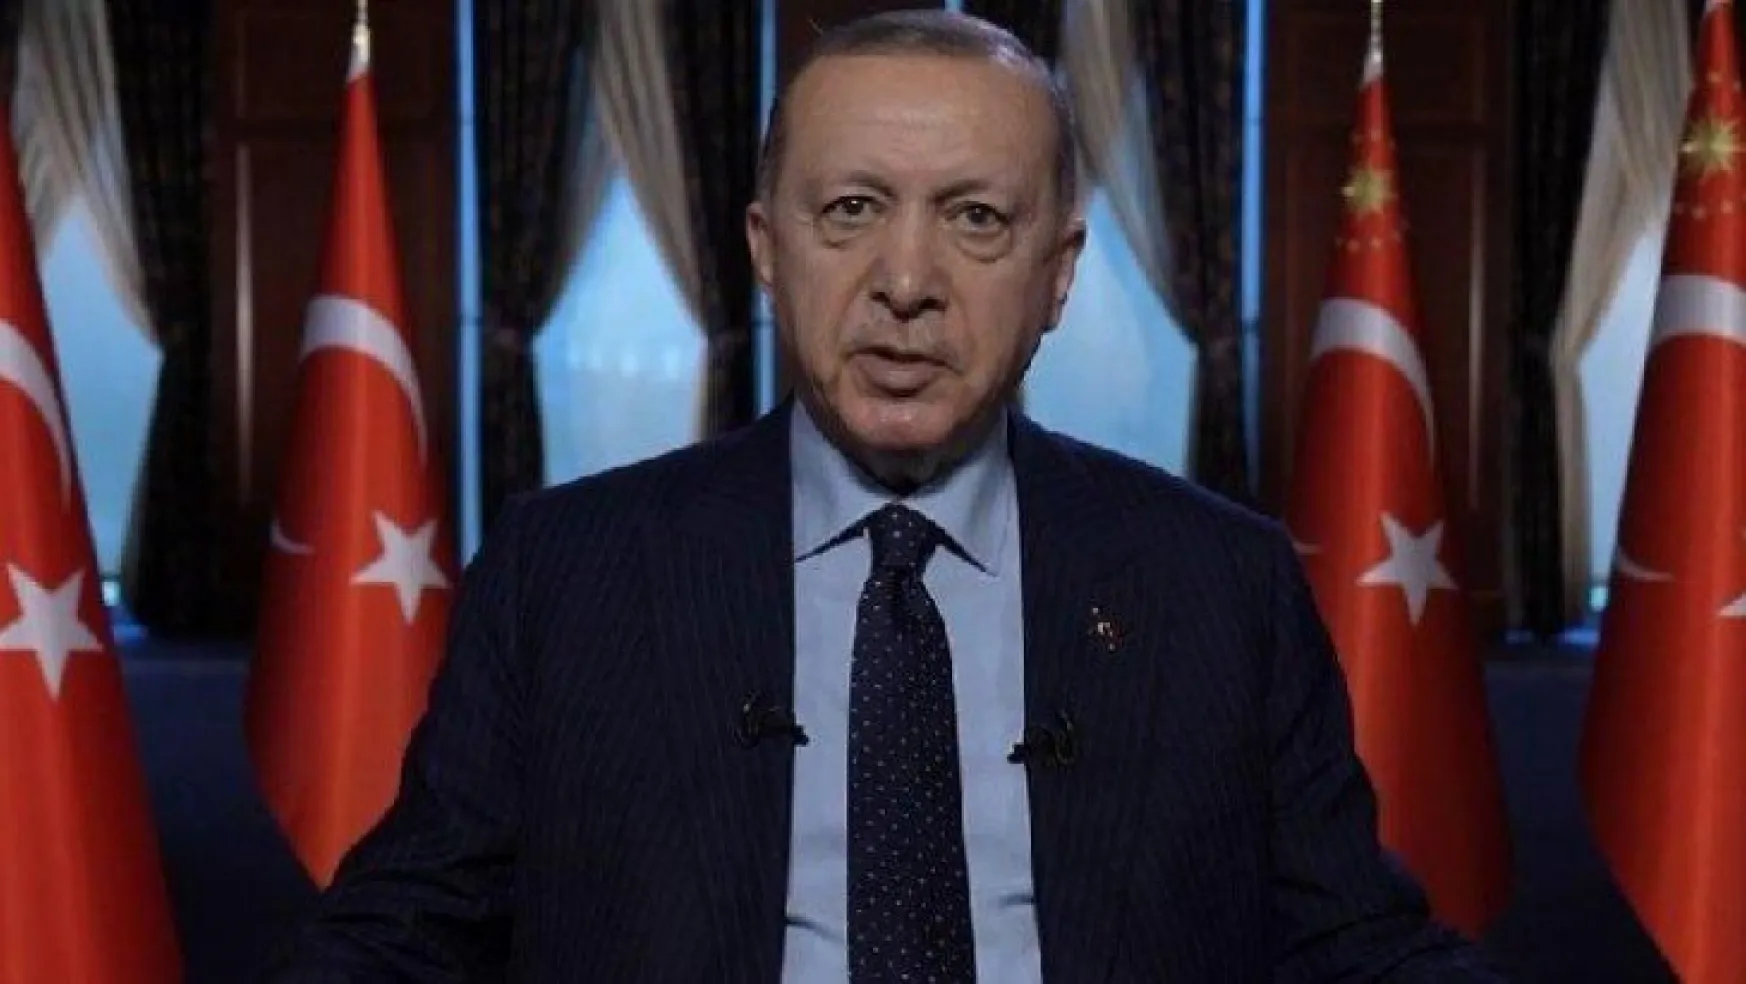 Erdoğan: CHP parçalanmaya başladı